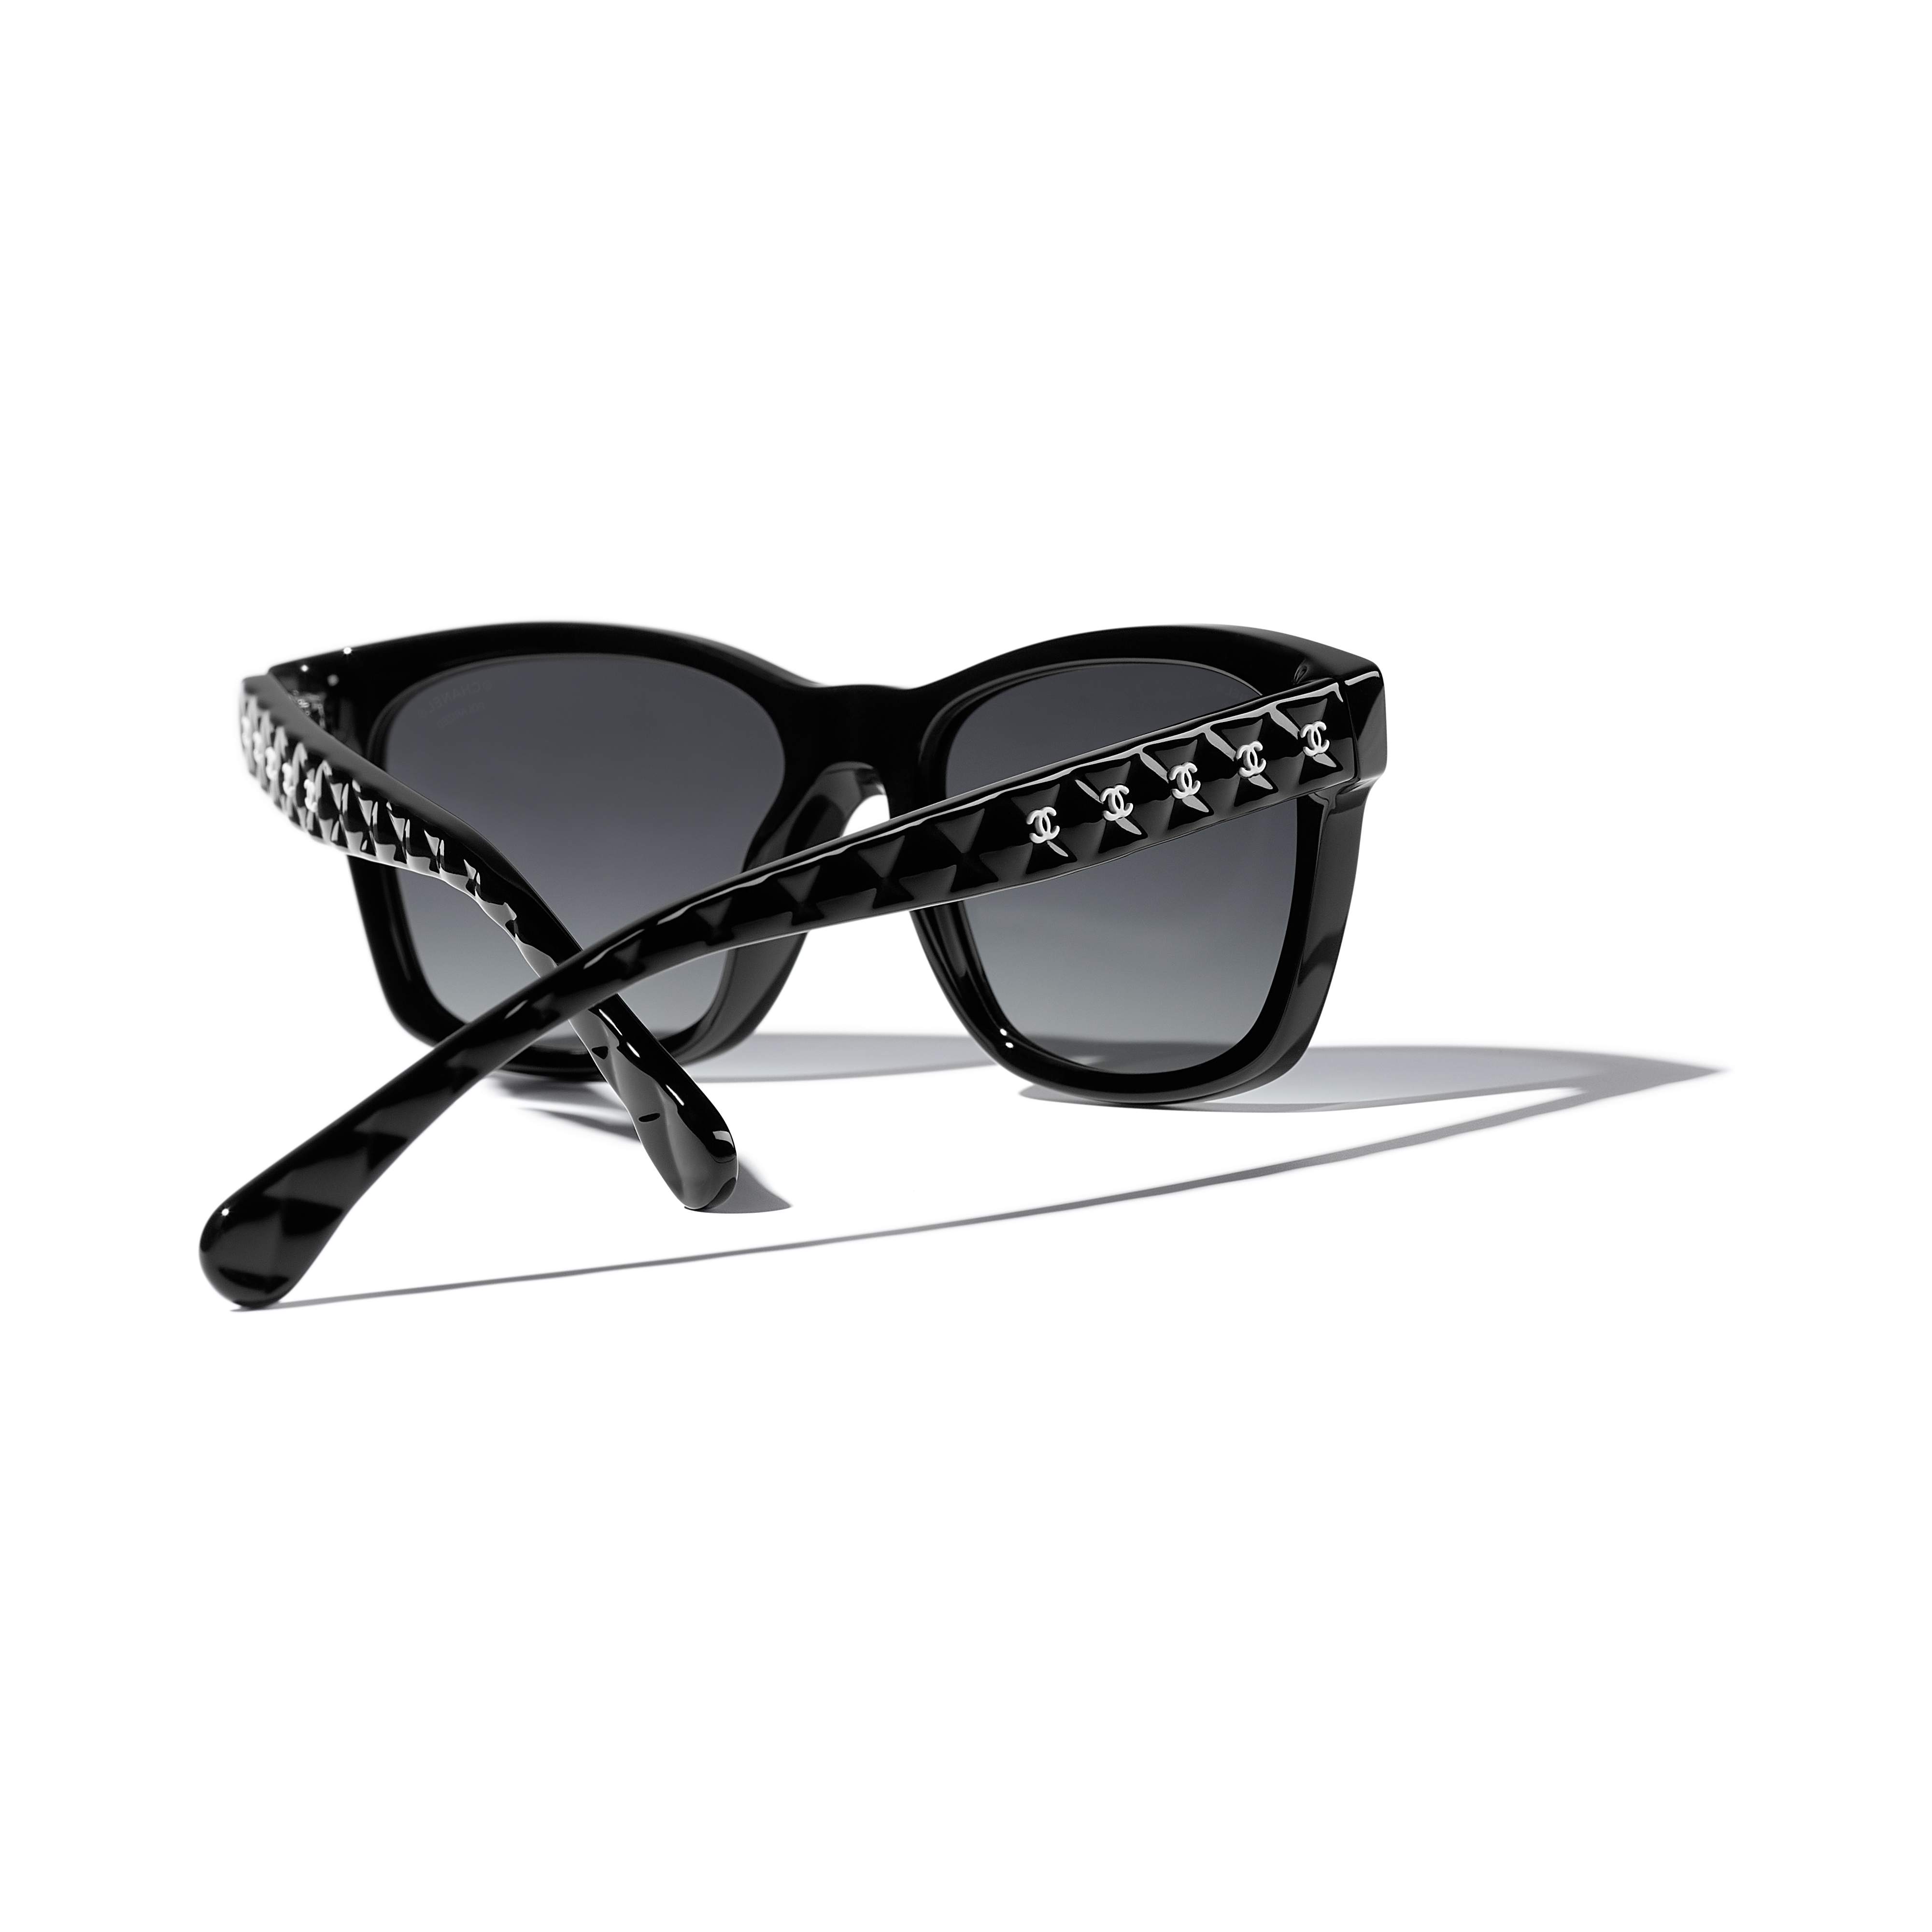 Sunglasses CHANEL CH5484 C760/S8 54-17 Black in stock, Price 283,33 €